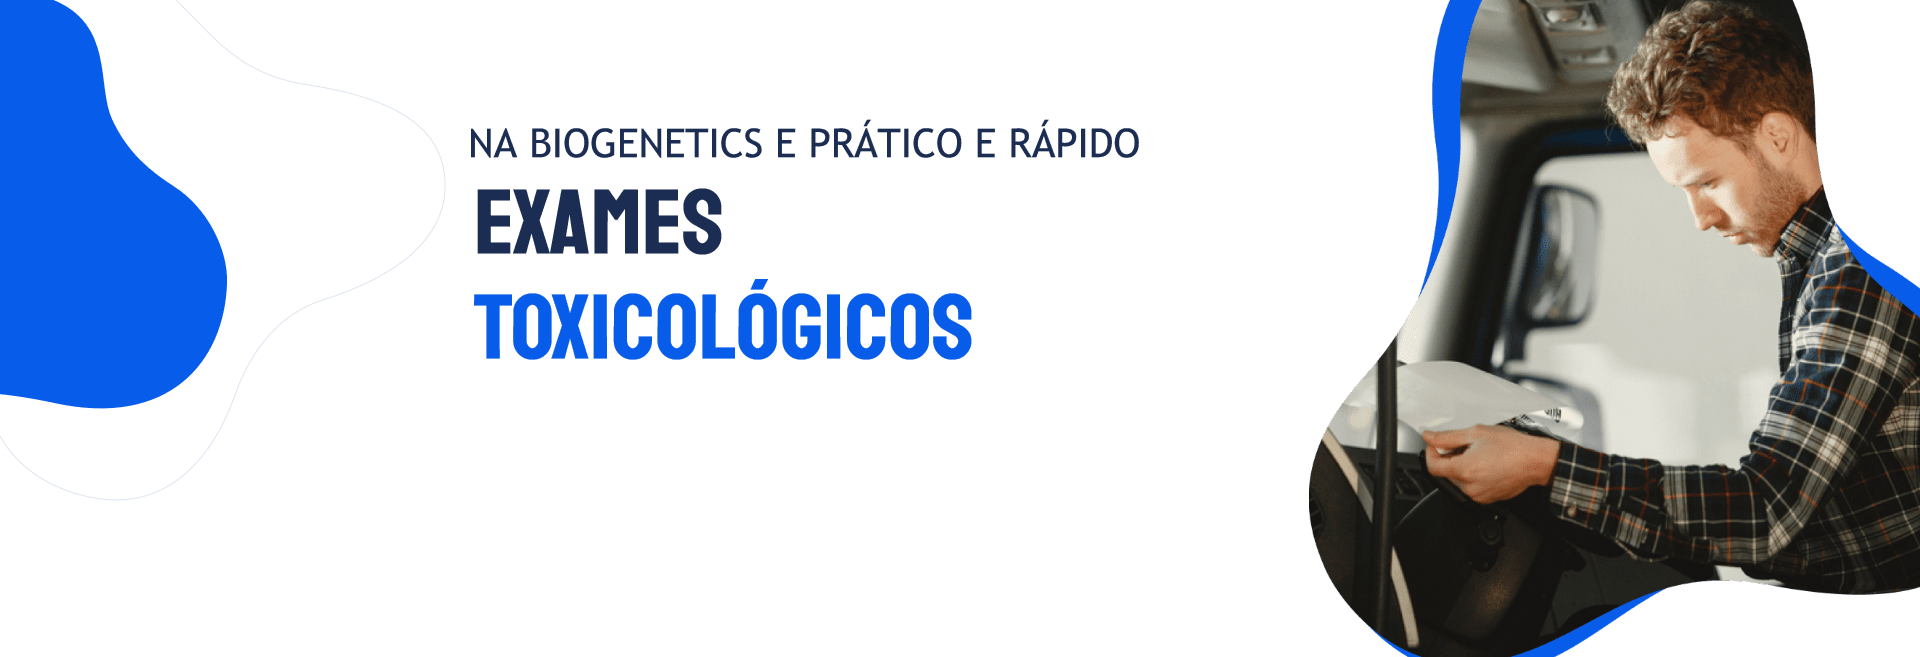 teste-toxicolico-biogenetics